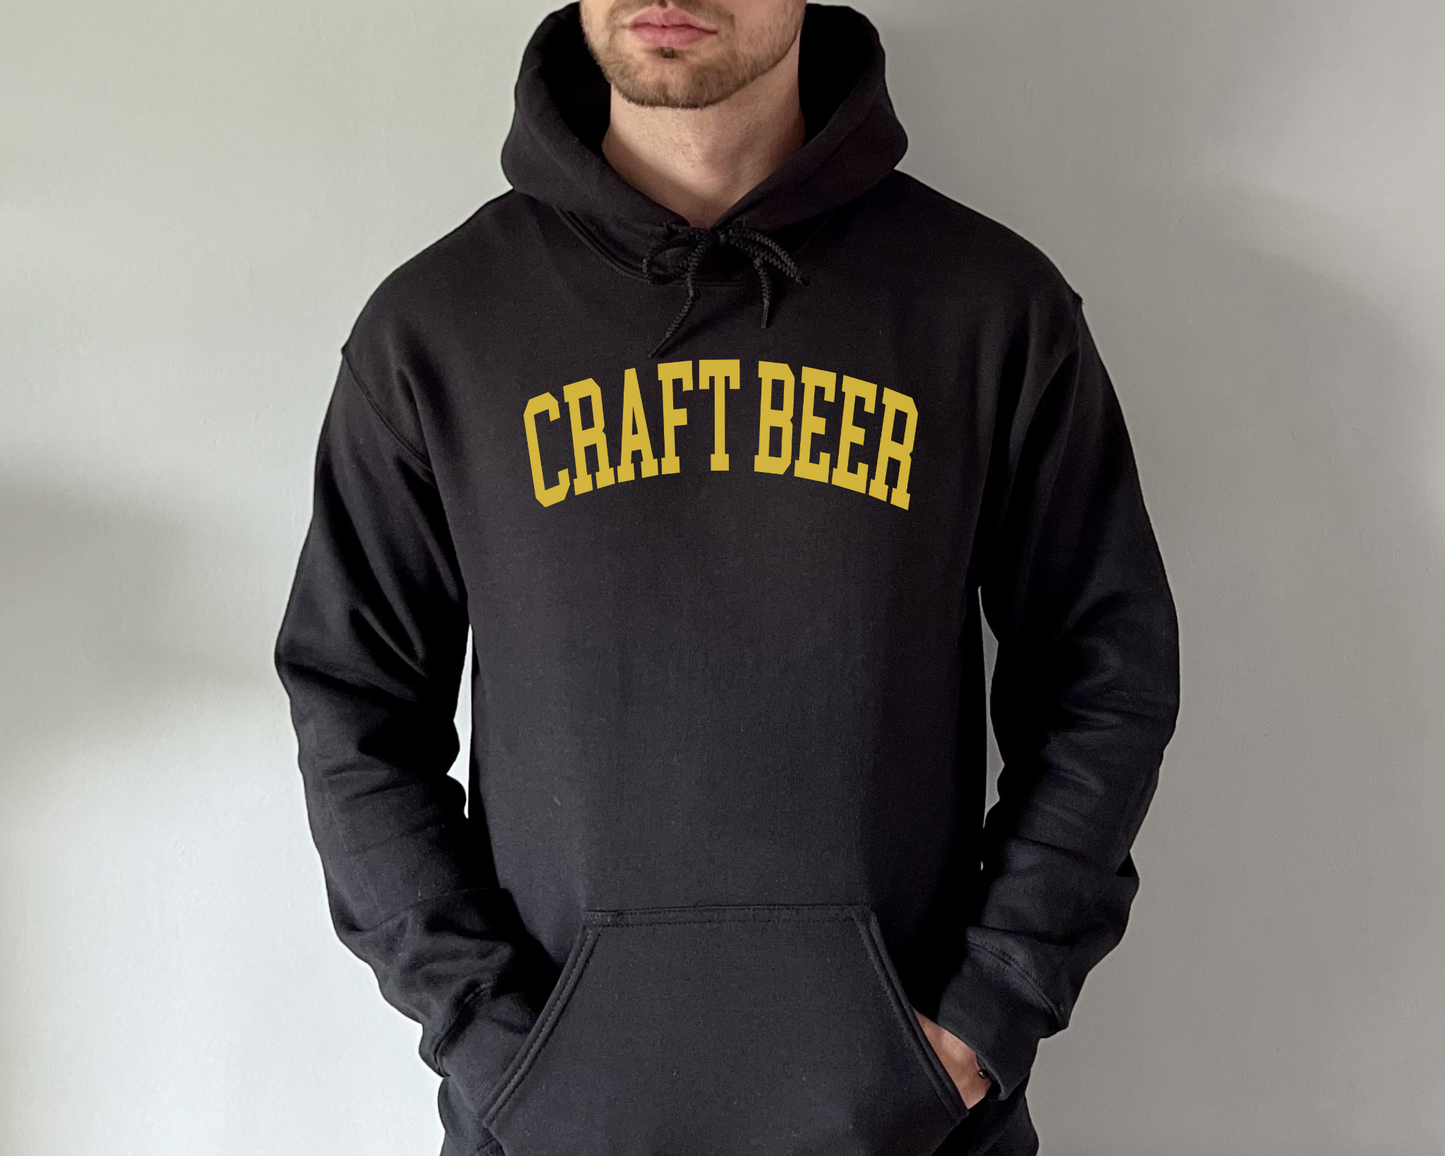 Craft Beer Hoodie in Black on a male model.